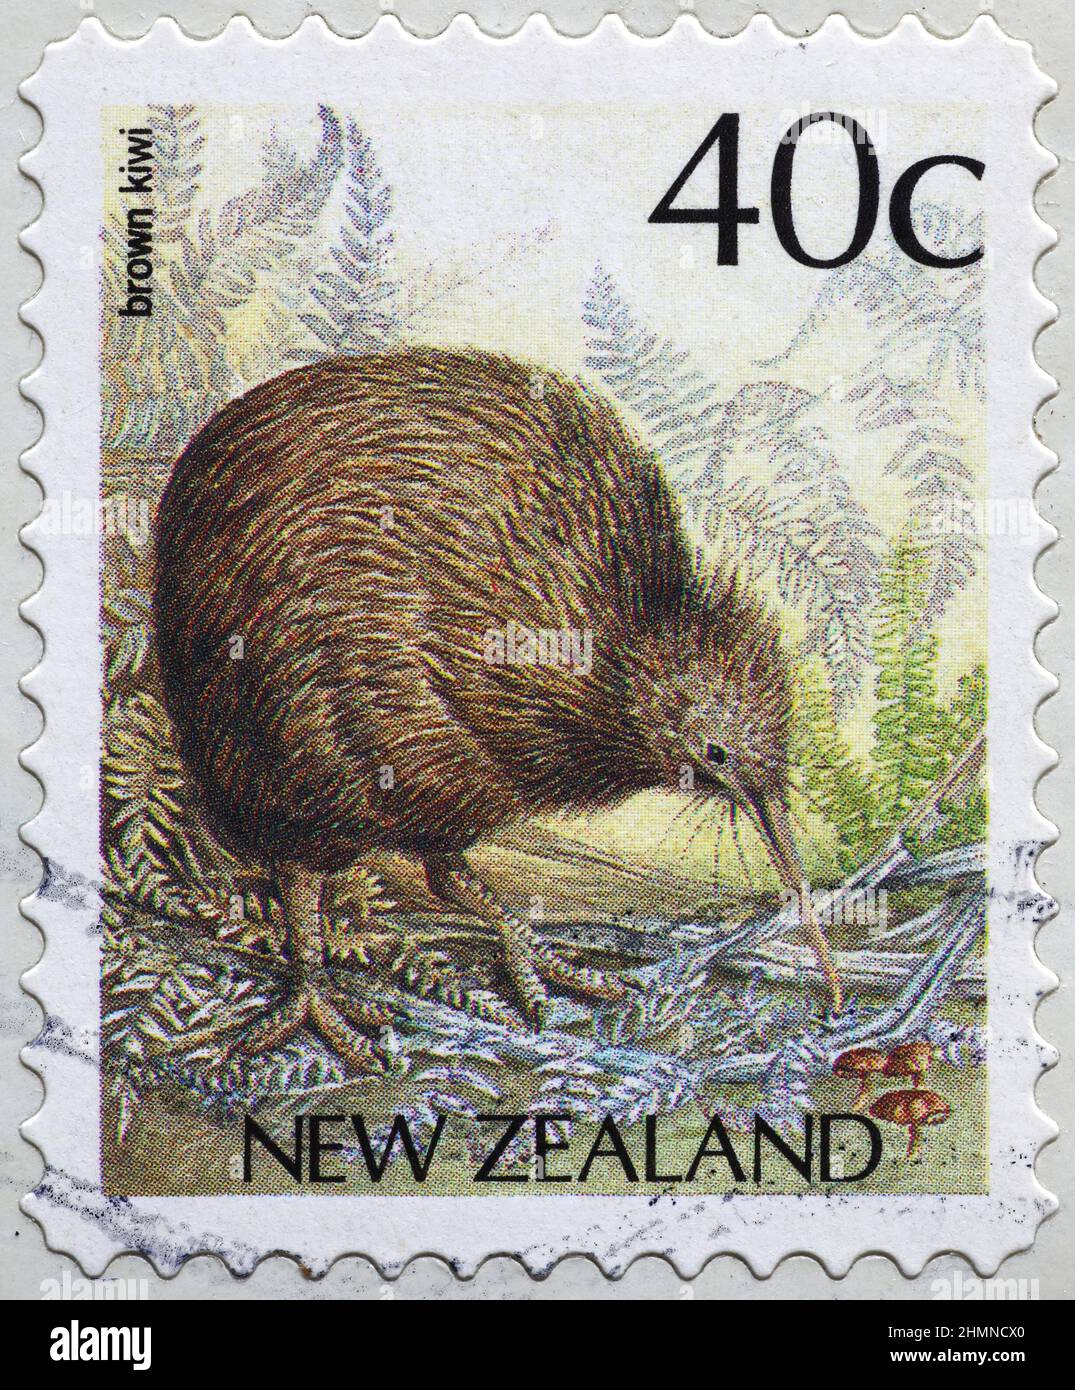 Brauner Kiwi, endemischer Vogel Neuseelands auf Briefmarke Stockfoto